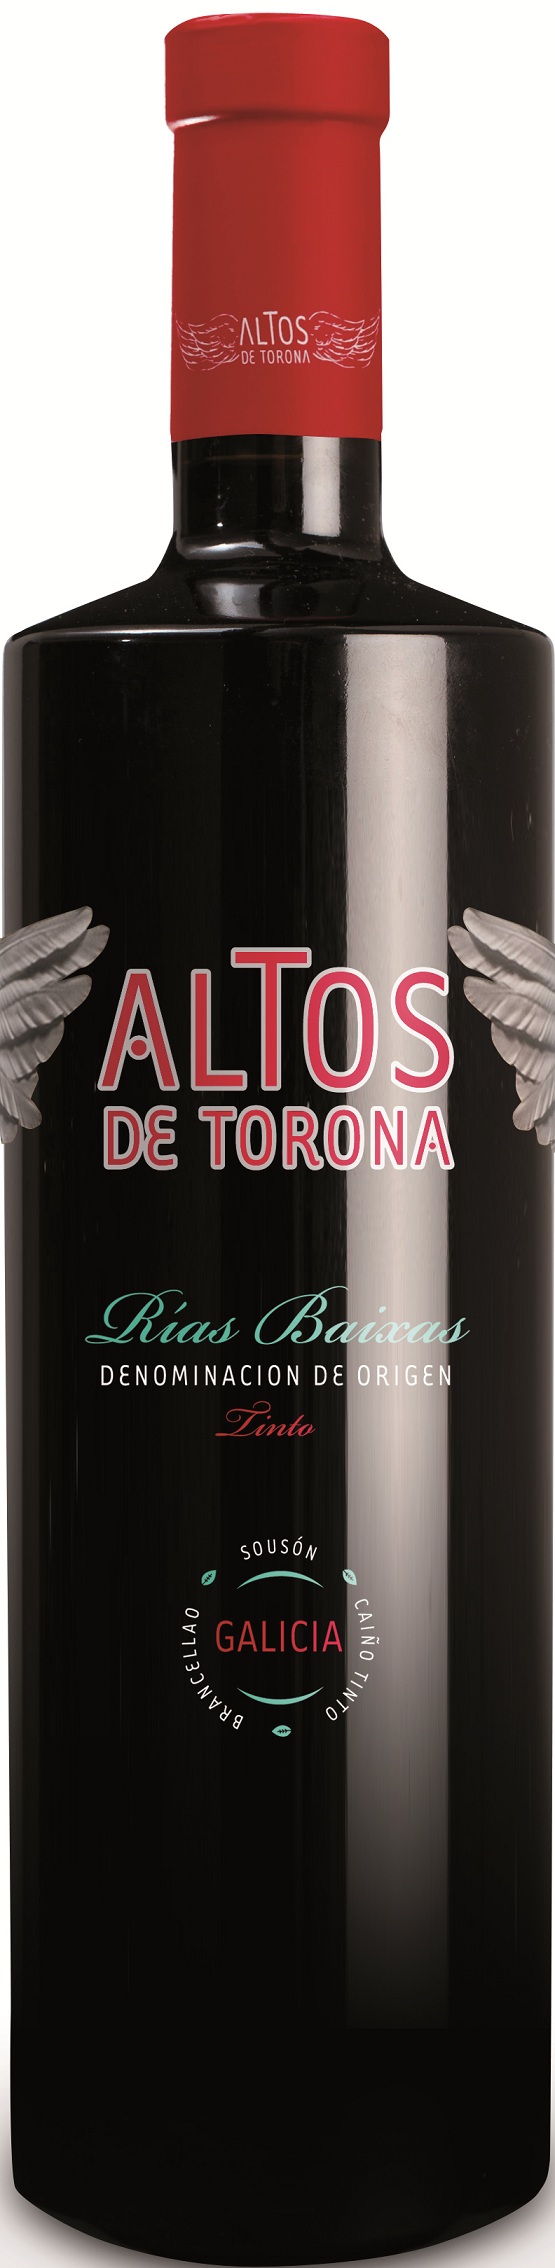 Logo del vino Altos de Torona Tinto